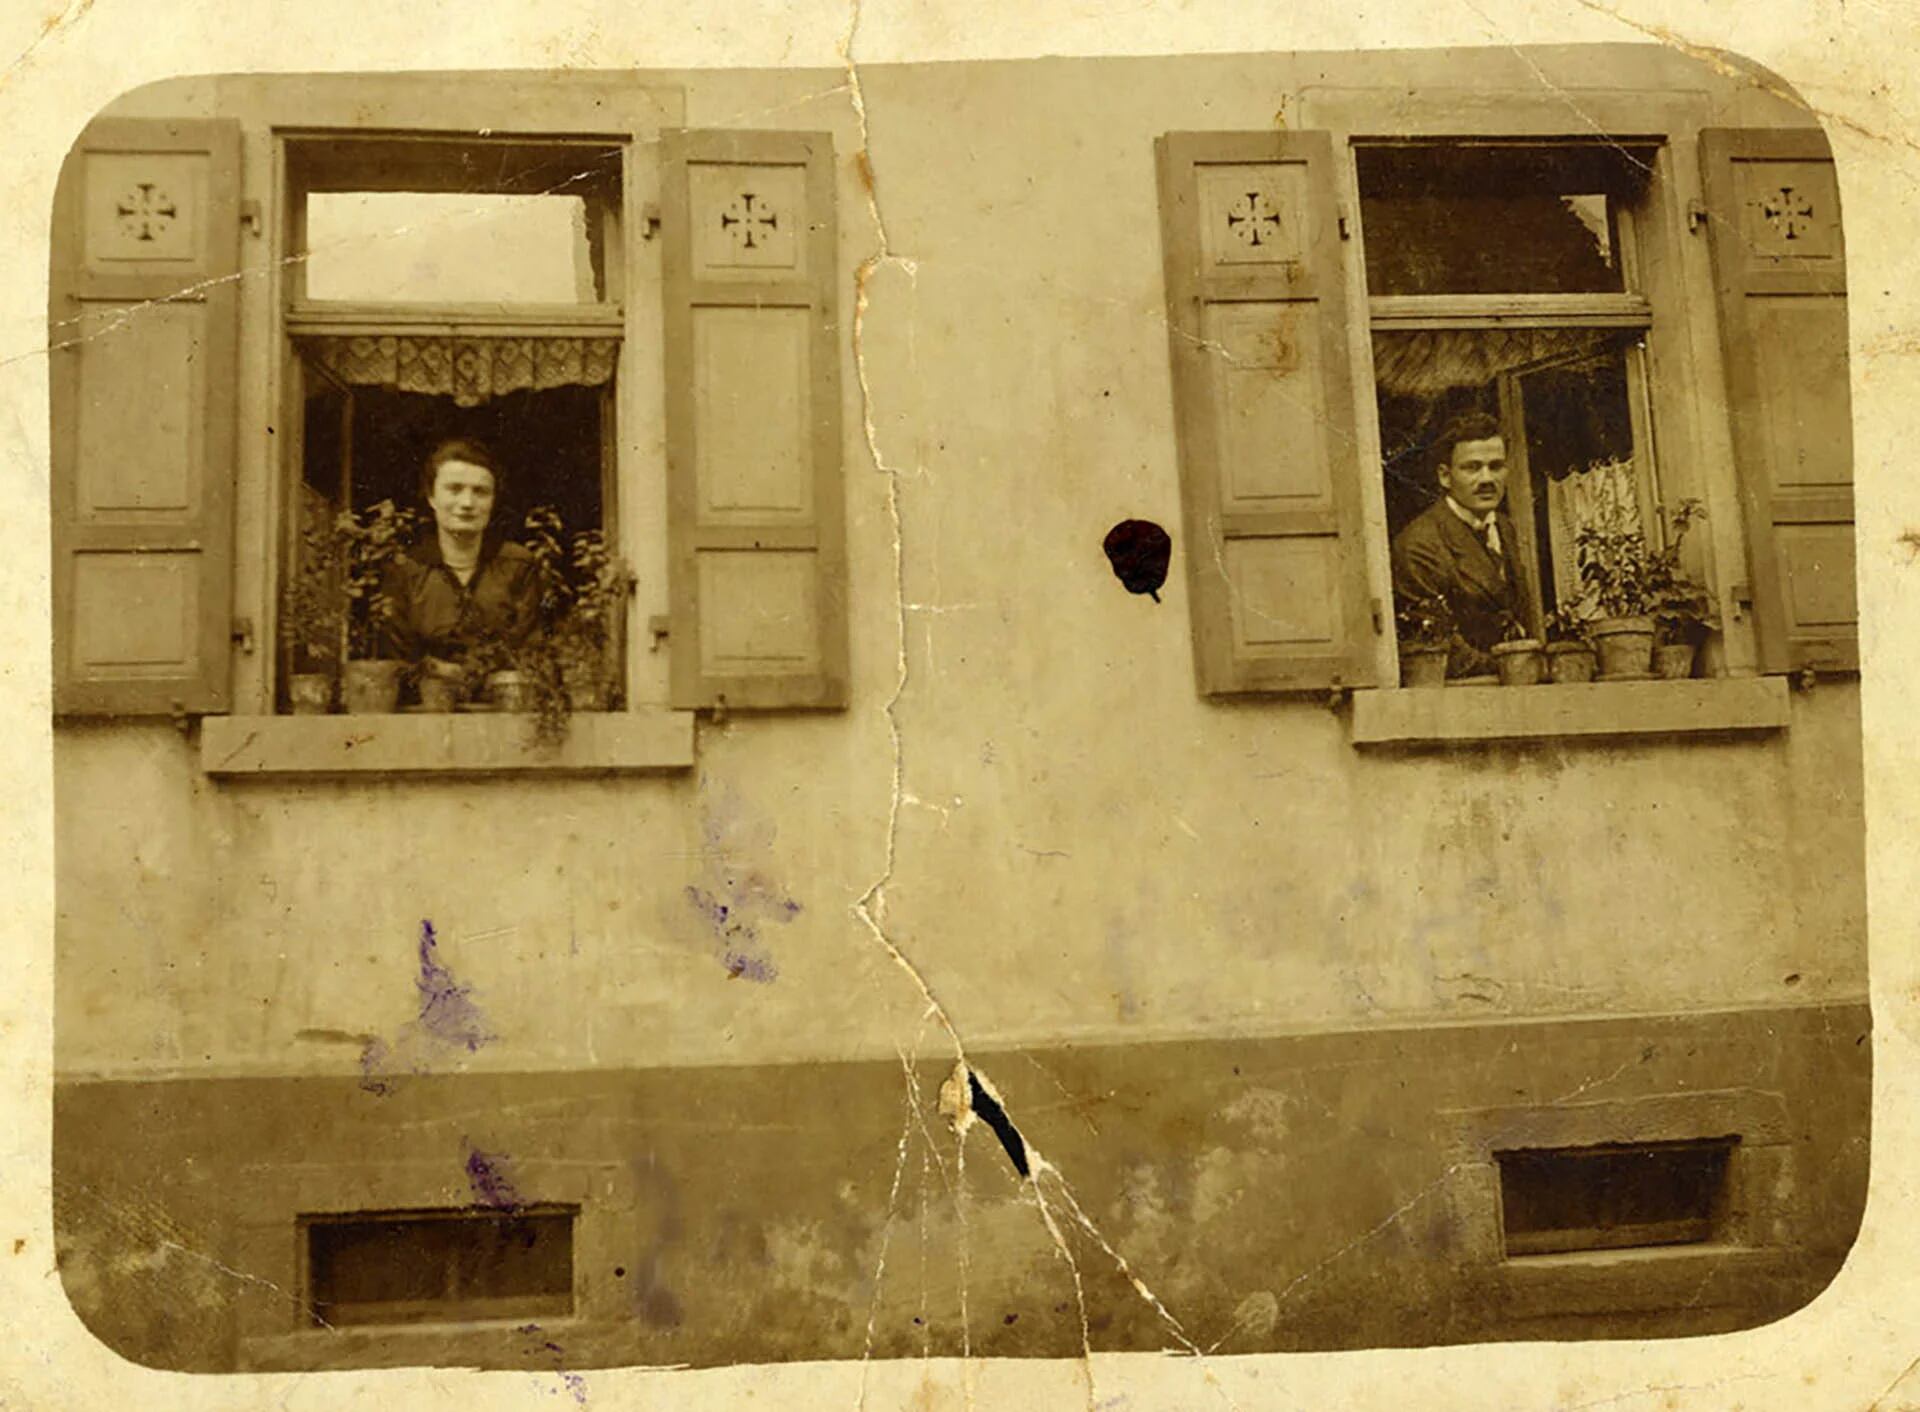 Walter y Herta Mayer en las ventanas de su casa de Ratibor, antes de la guerra. (Yad Vashem)